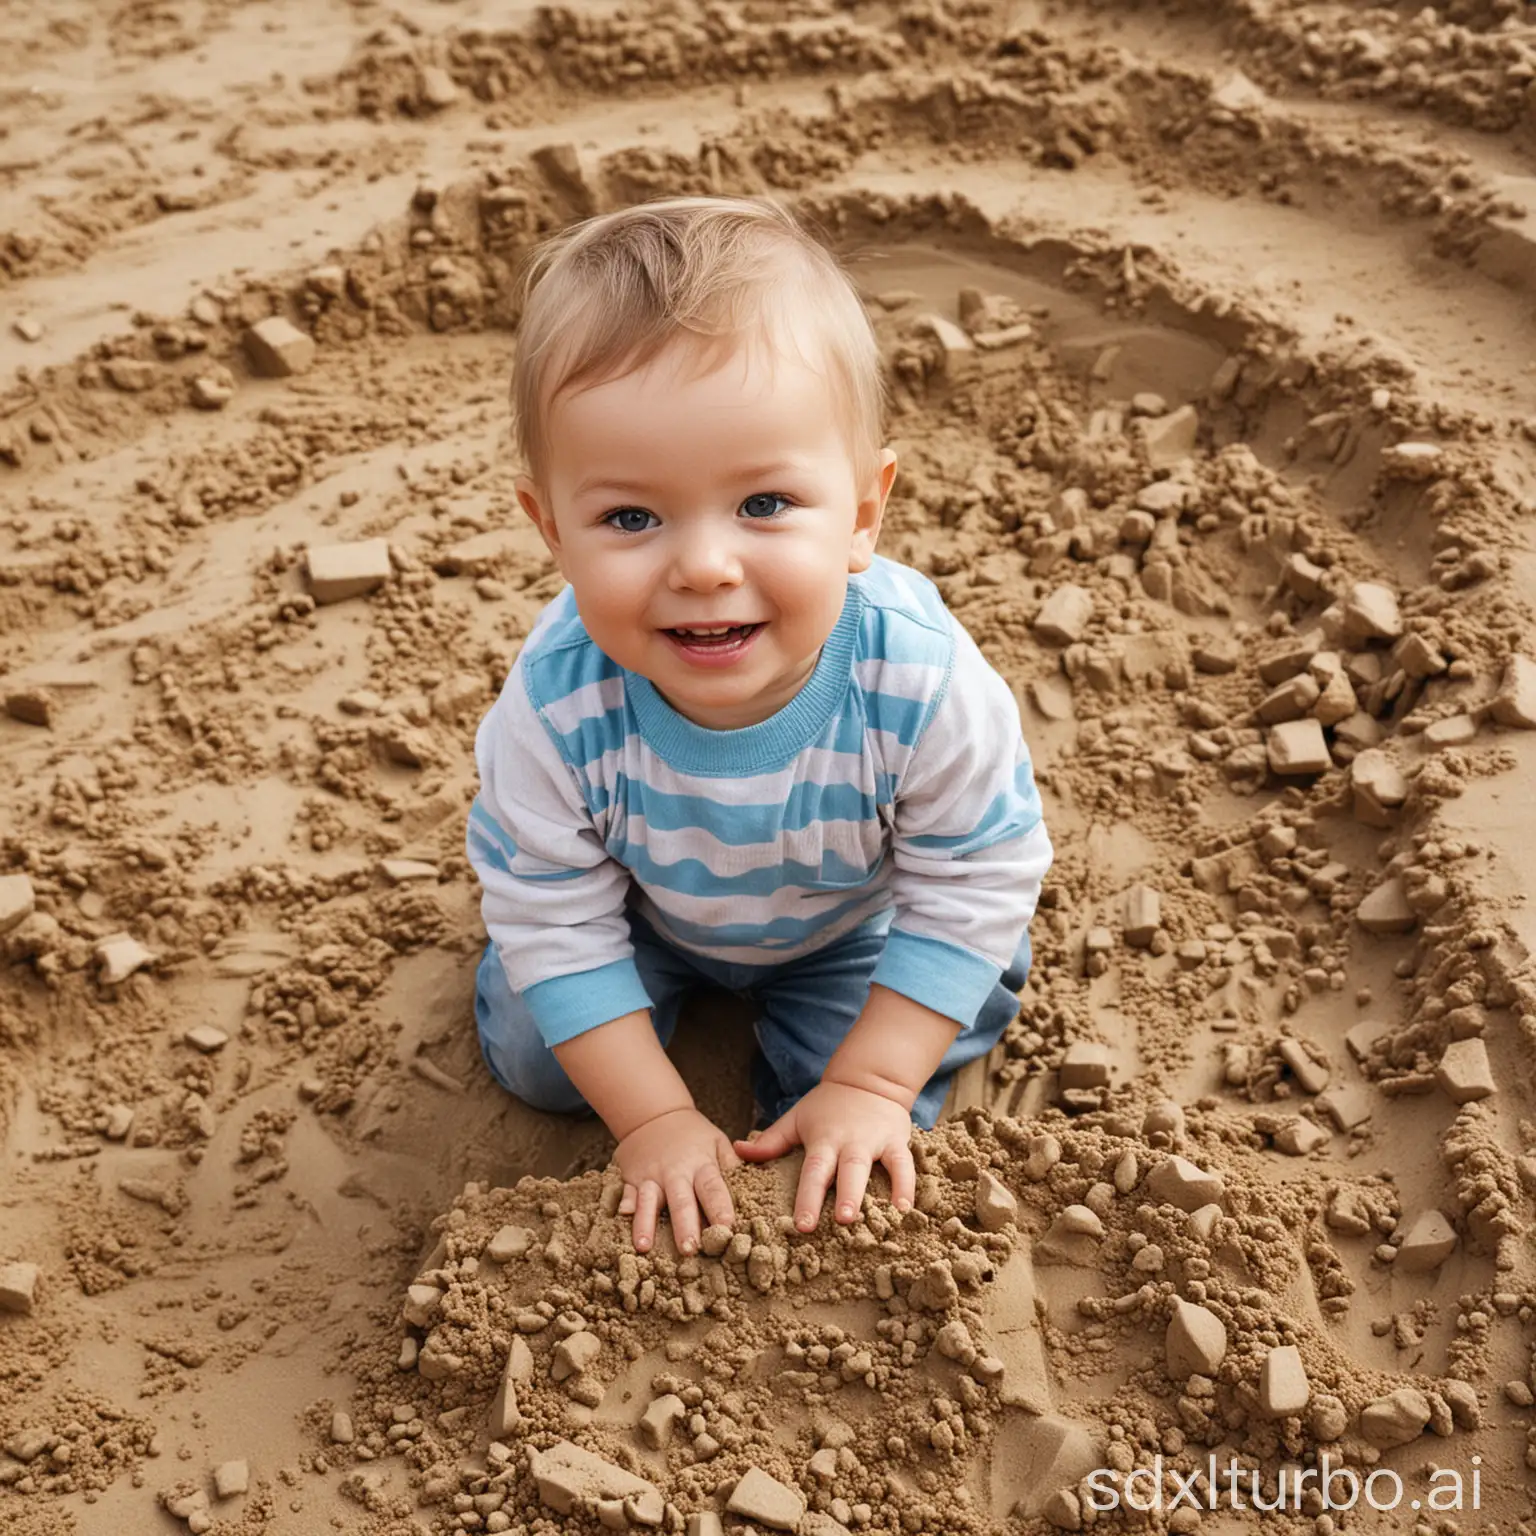 little child in the sandbox